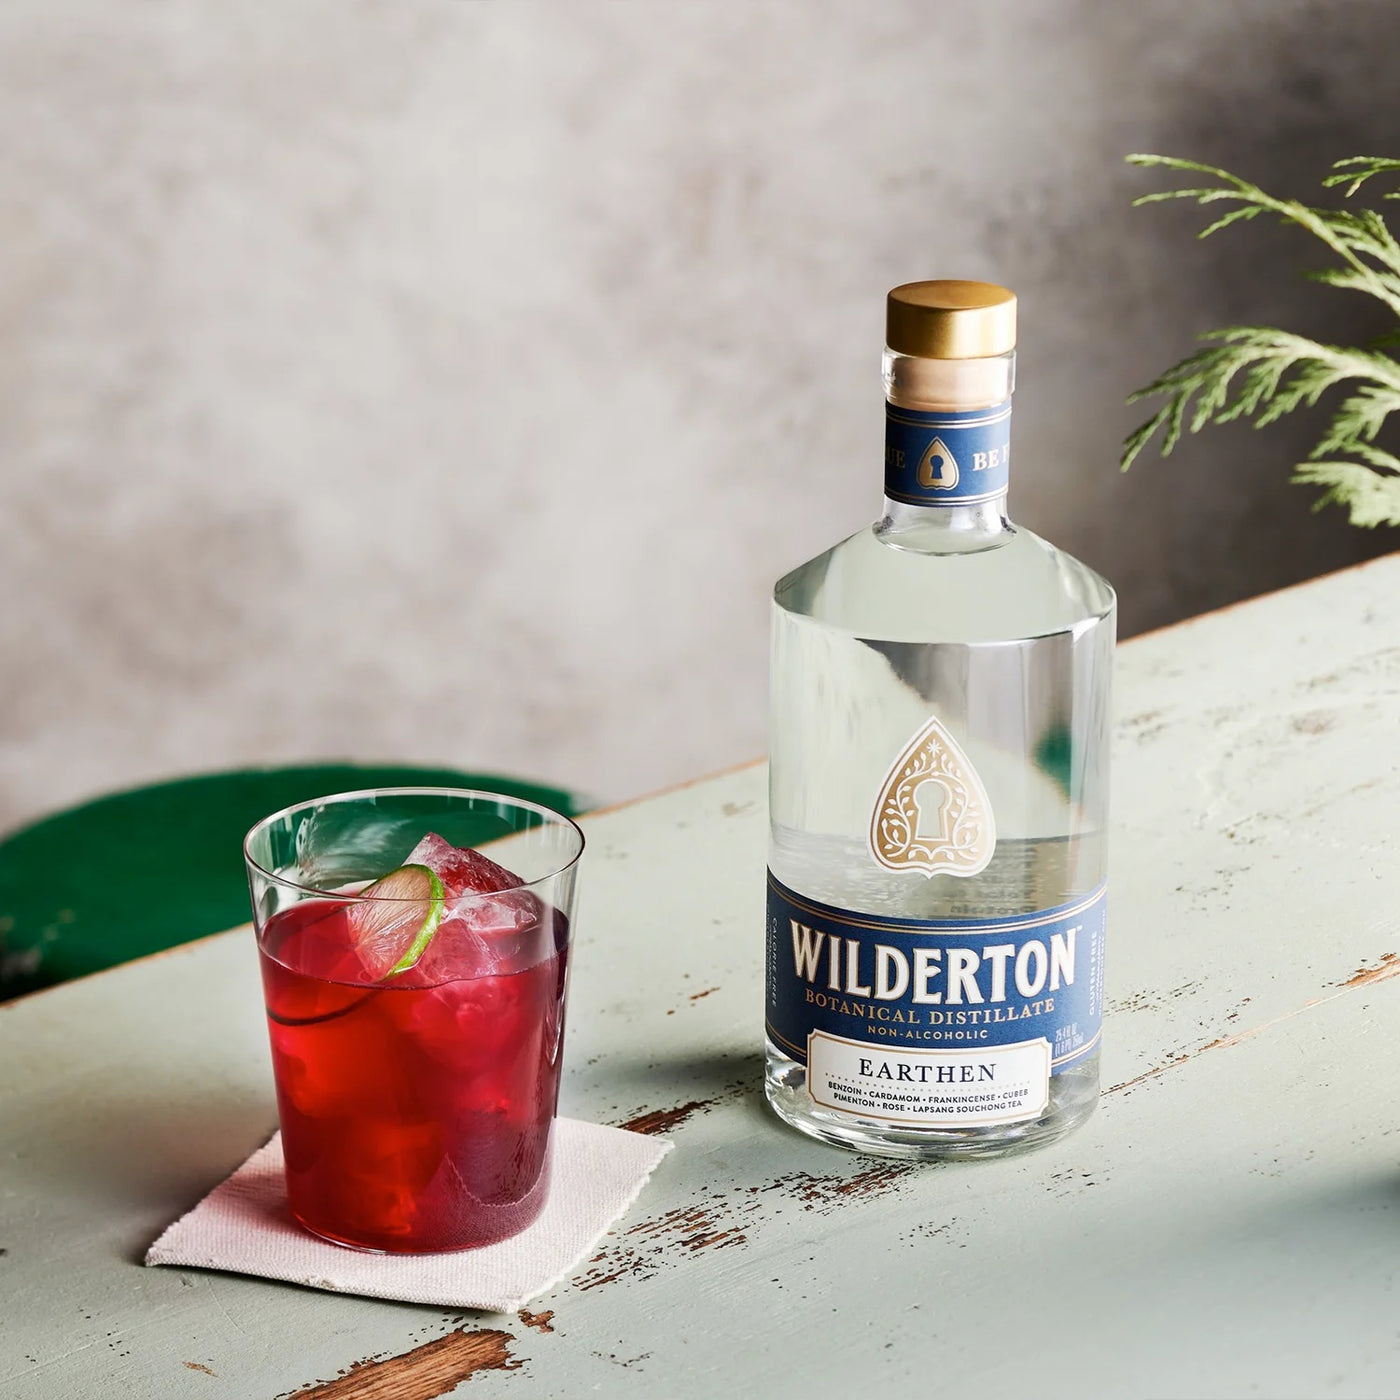 Wilderton non-alcoholic spirits